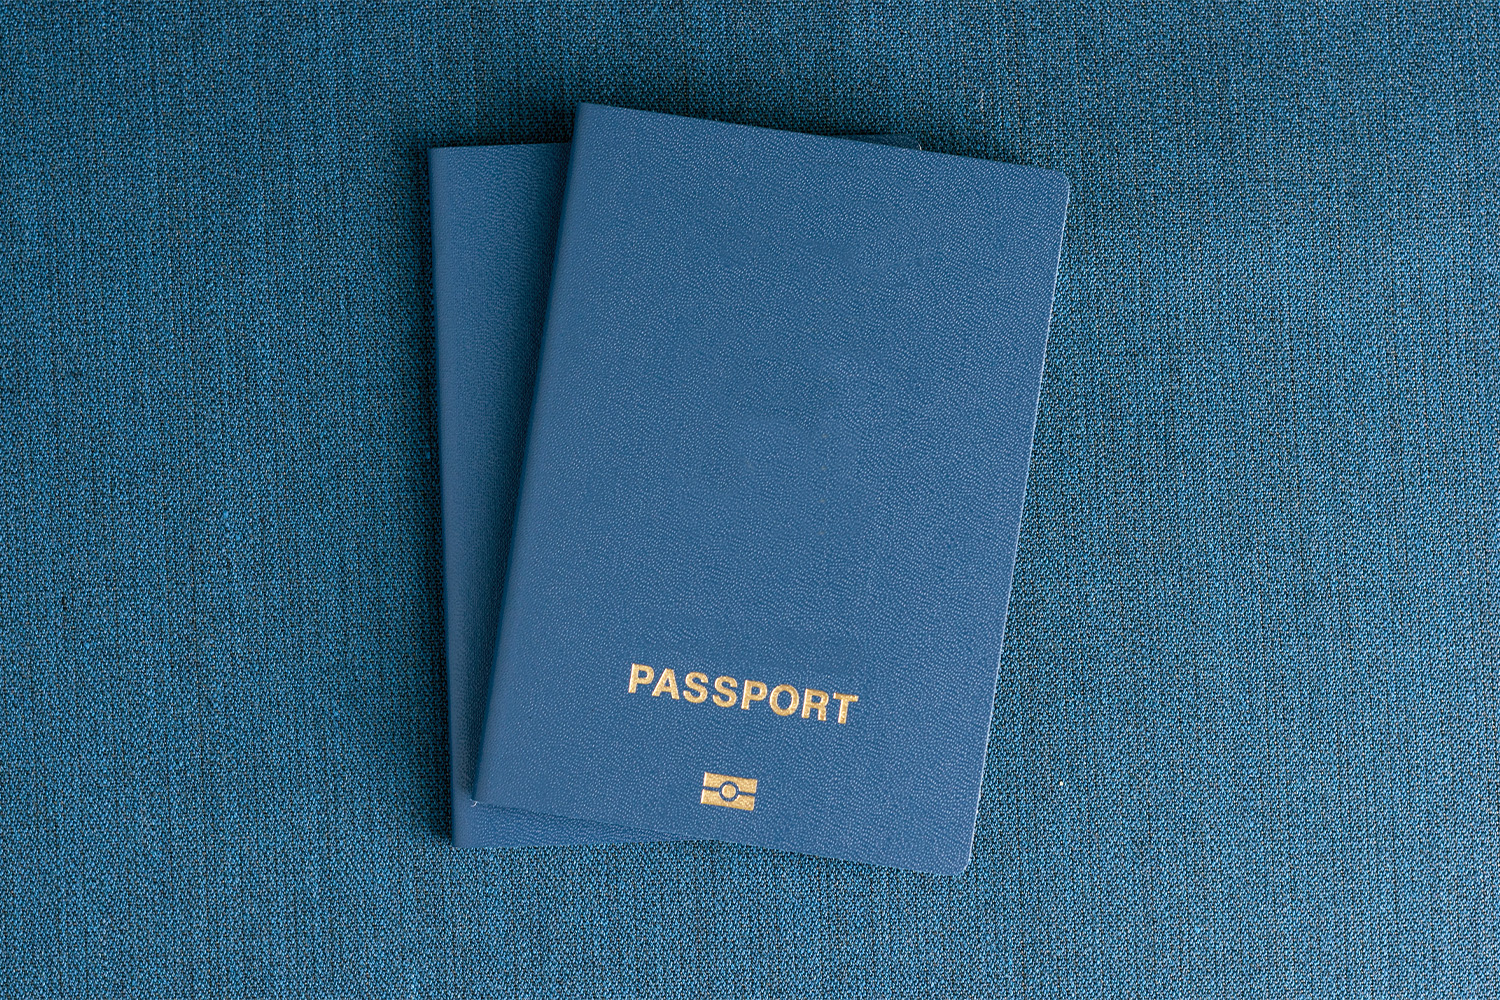 هل تحتاج إلى جواز سفر مؤقت؟ كيف ومتى تحصل على جواز سفرك بسرعة